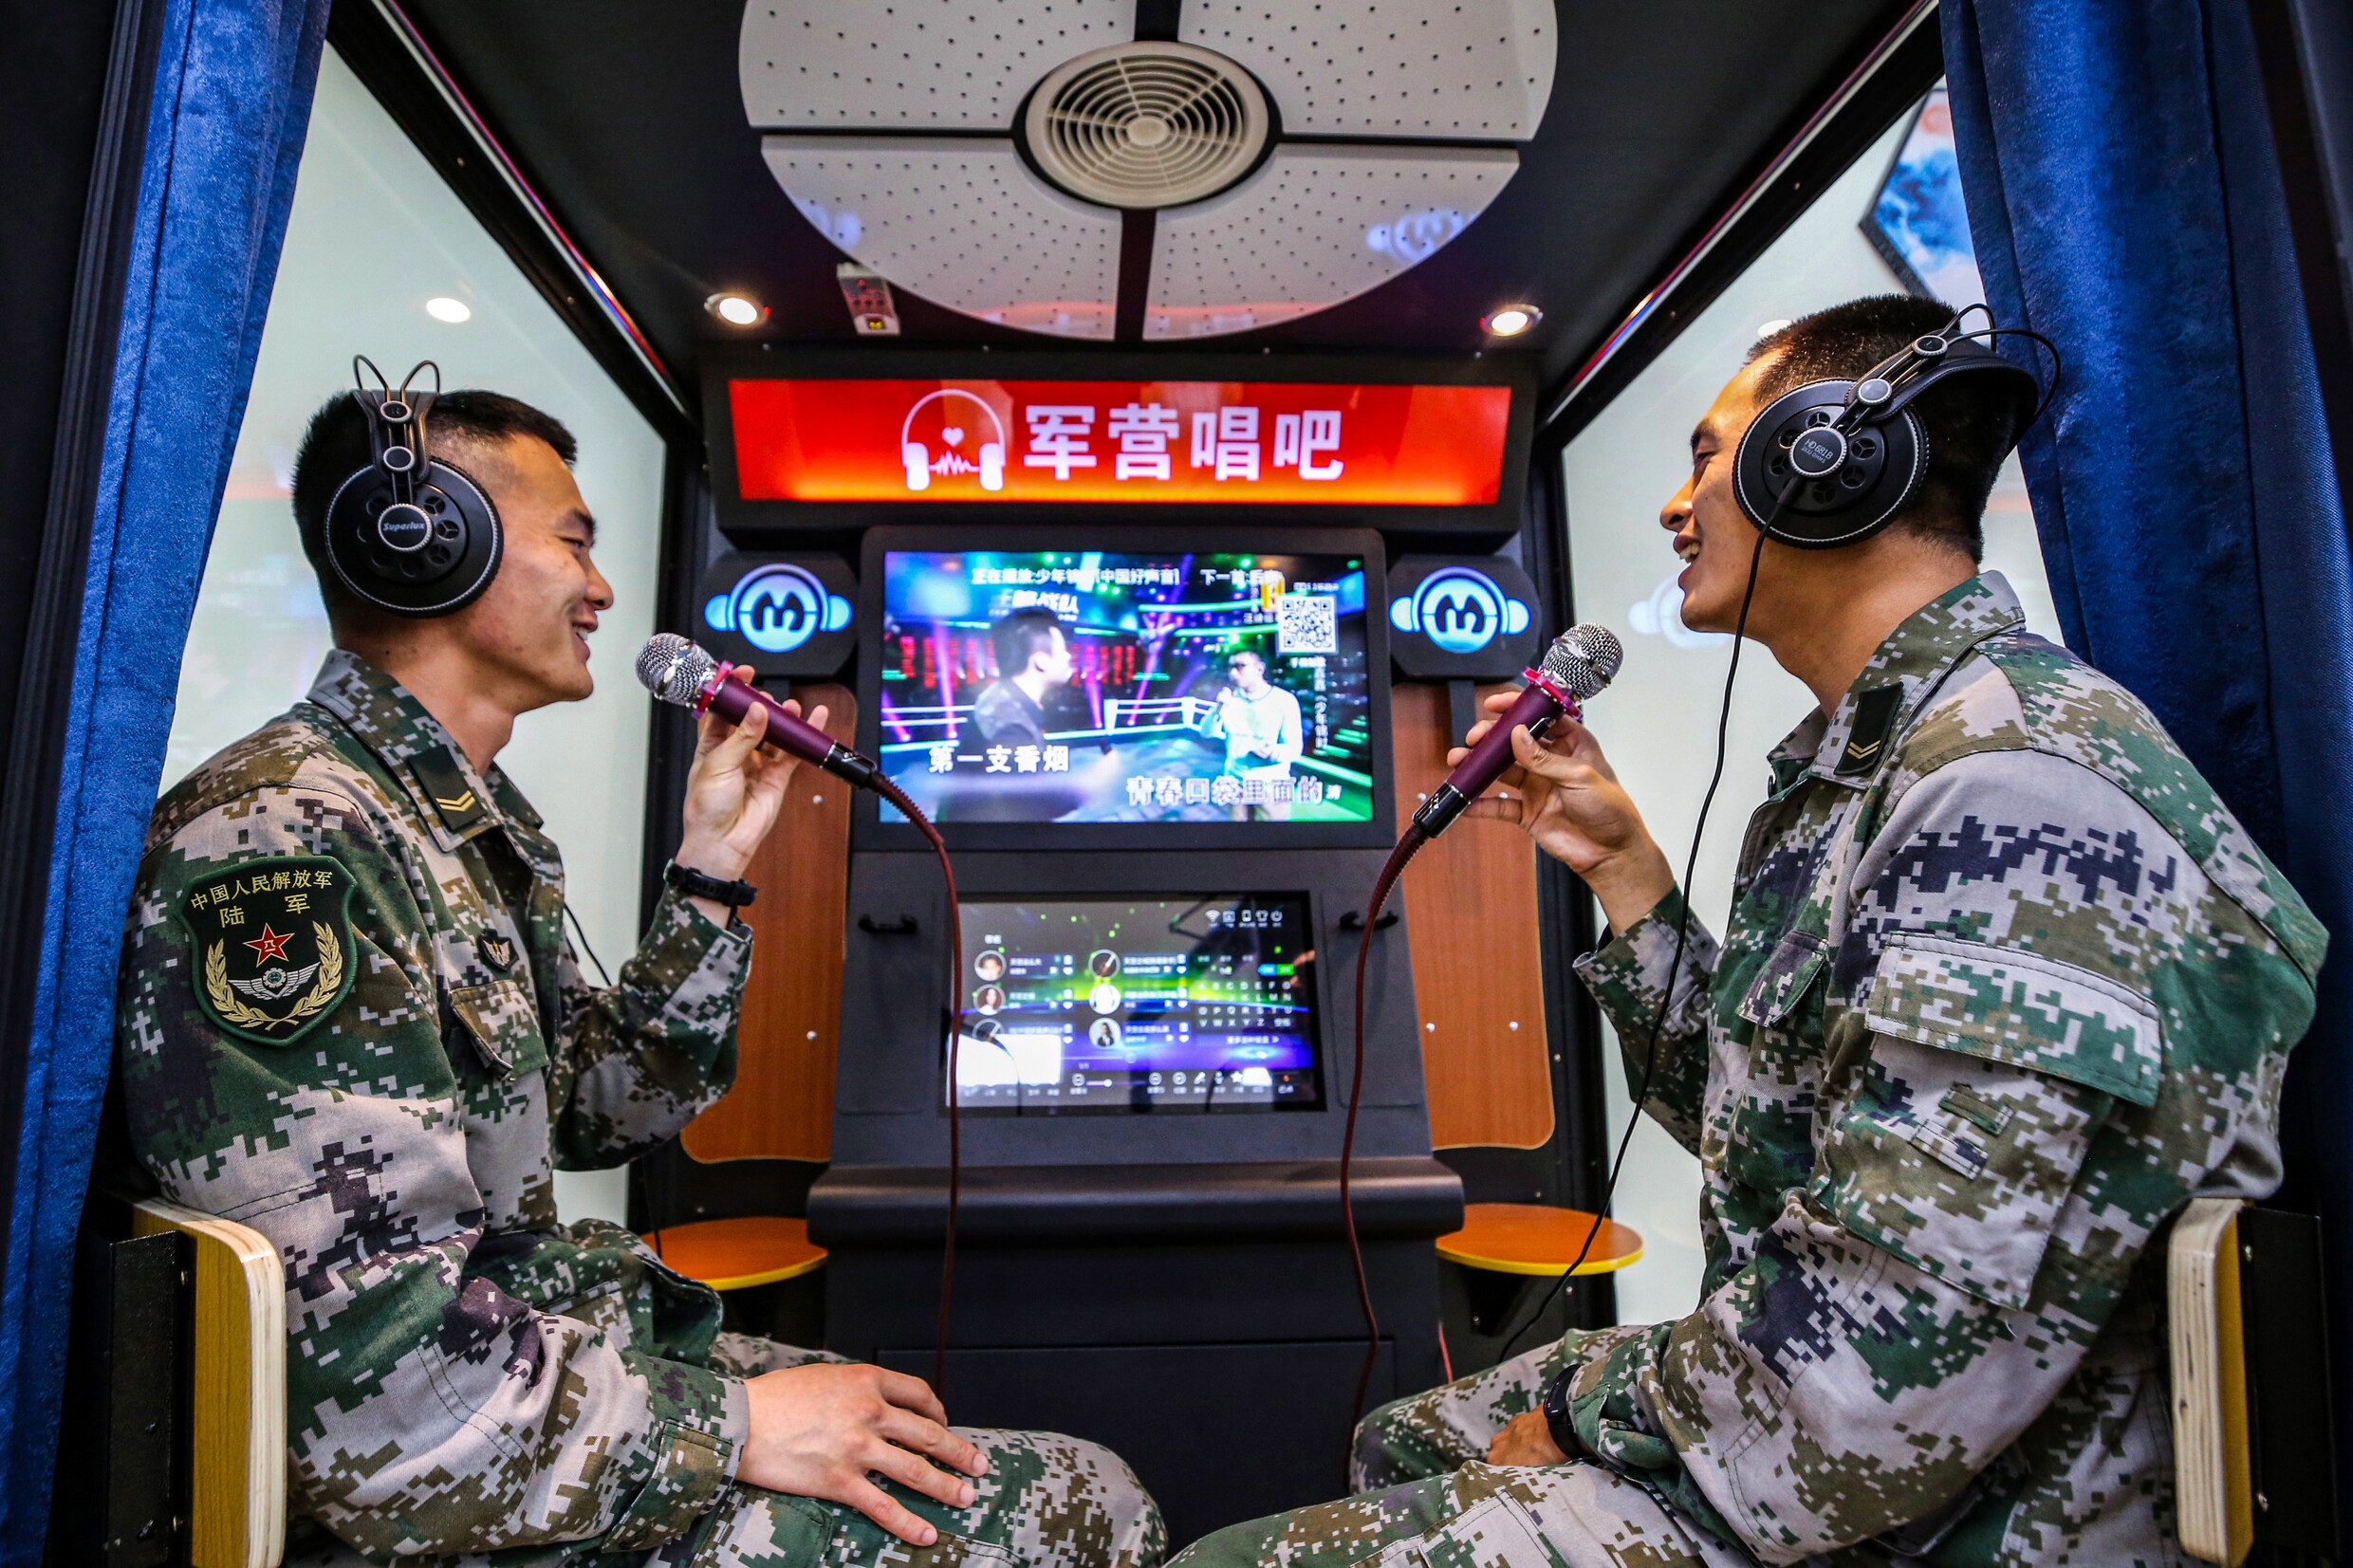 China legt ‘ongepaste’ karaokeliedjes aan banden en gaat voor ‘positieve energie’